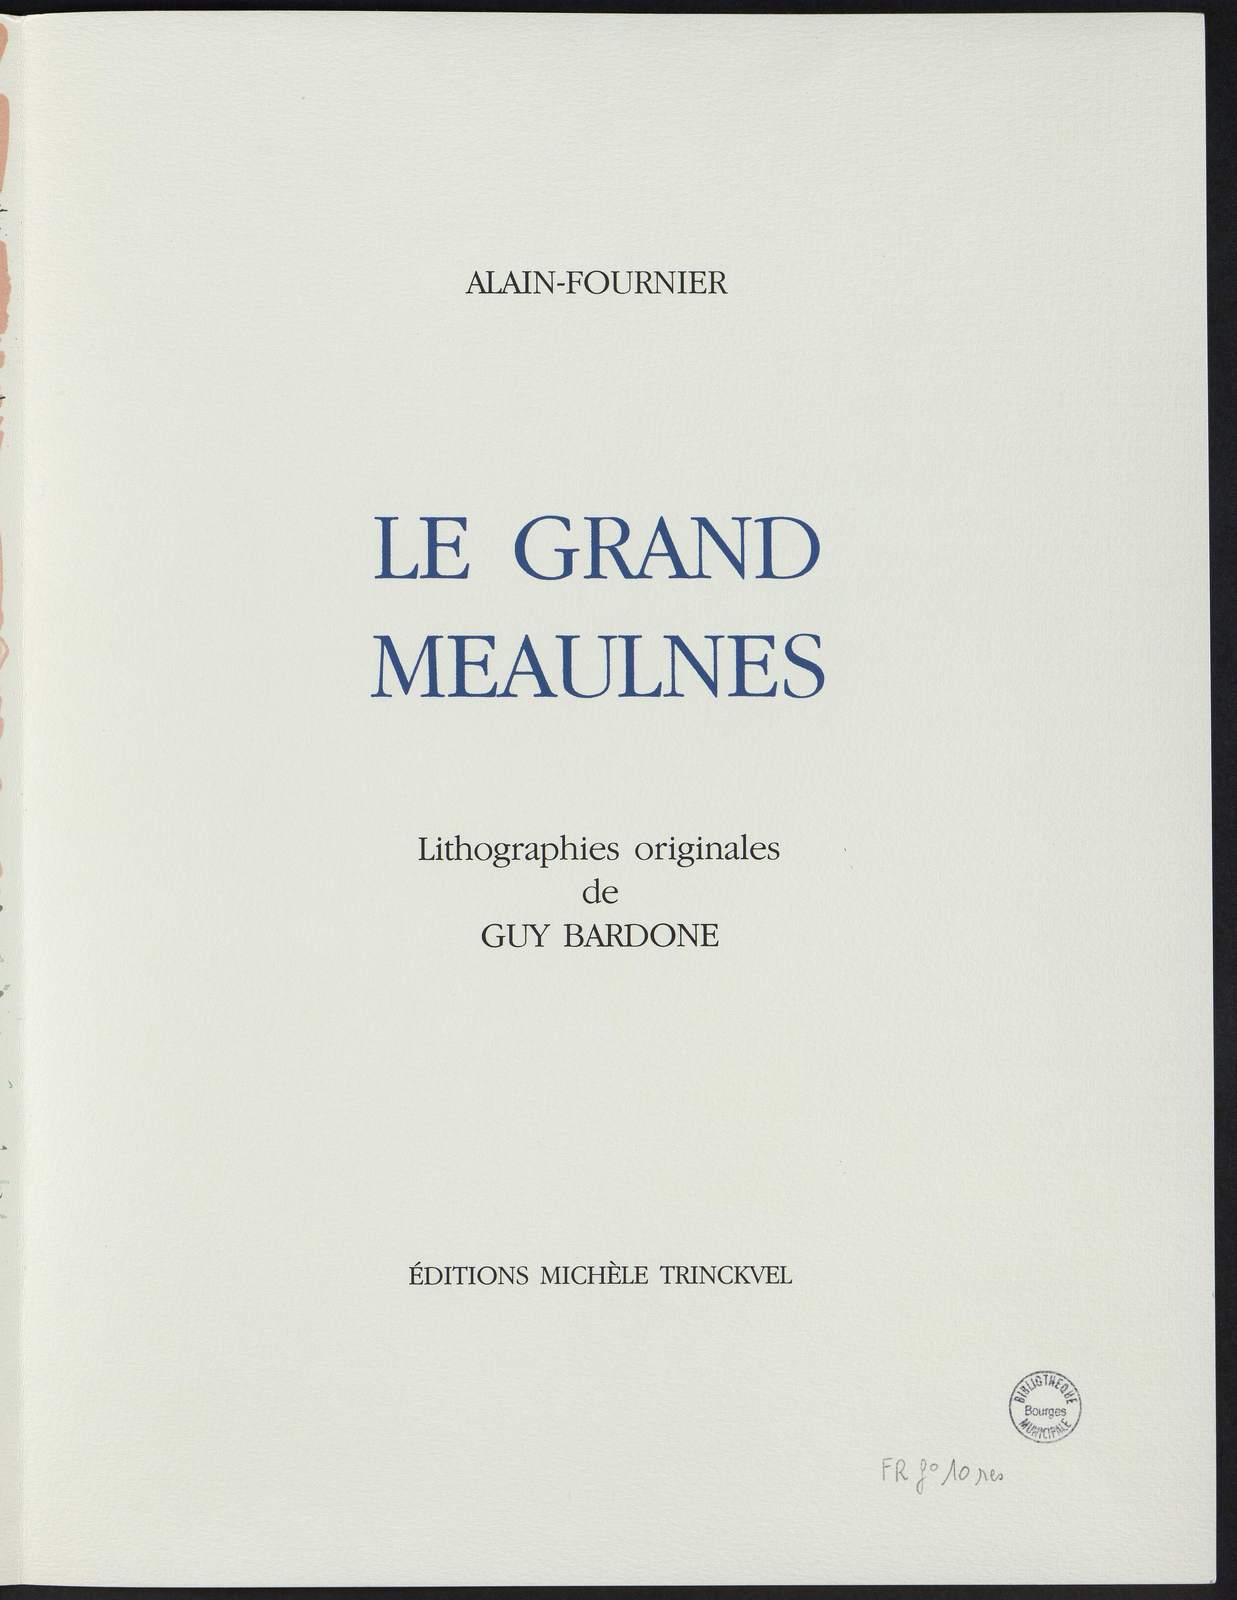 Le Grand Meaulnes, Le jour des noces, illustré par Guy Bardone, Michèle Trinckvel, 1989